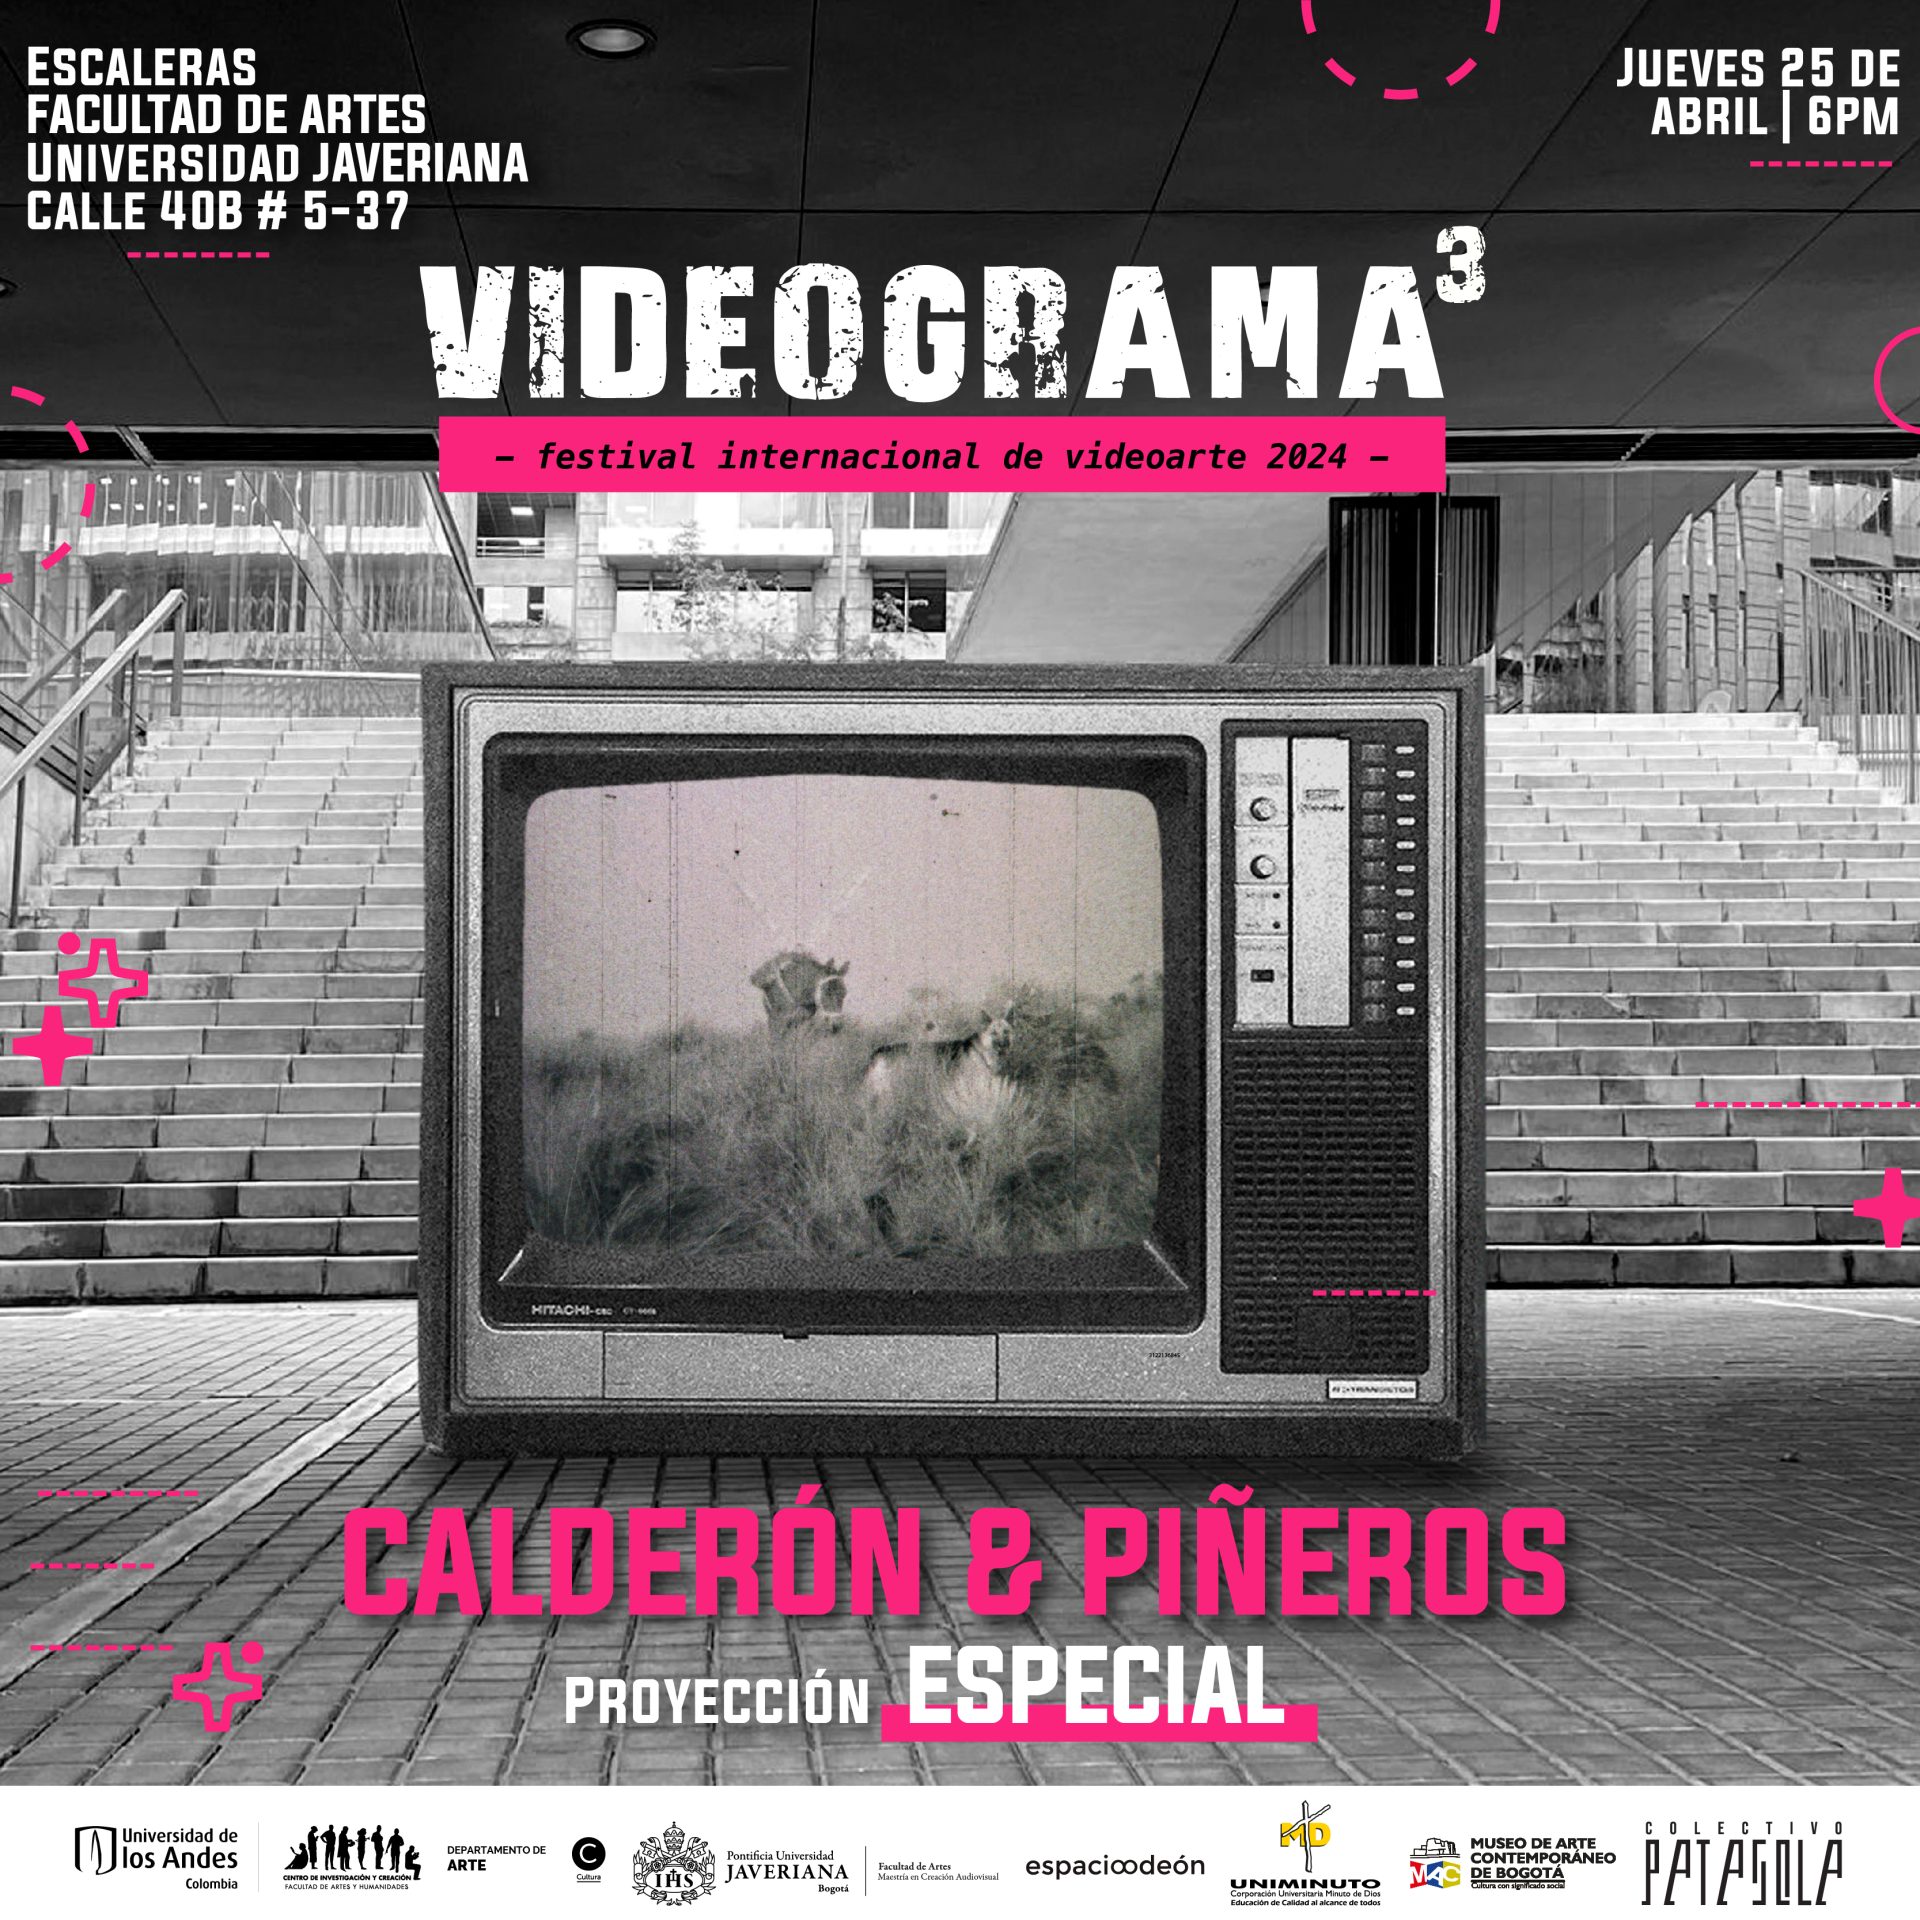 El jueves 25 de abril a las 6:00 p.m. se proyectarán 3 cortometrajes del colectivo uniandino CALDERÓN Y PIÑEROS